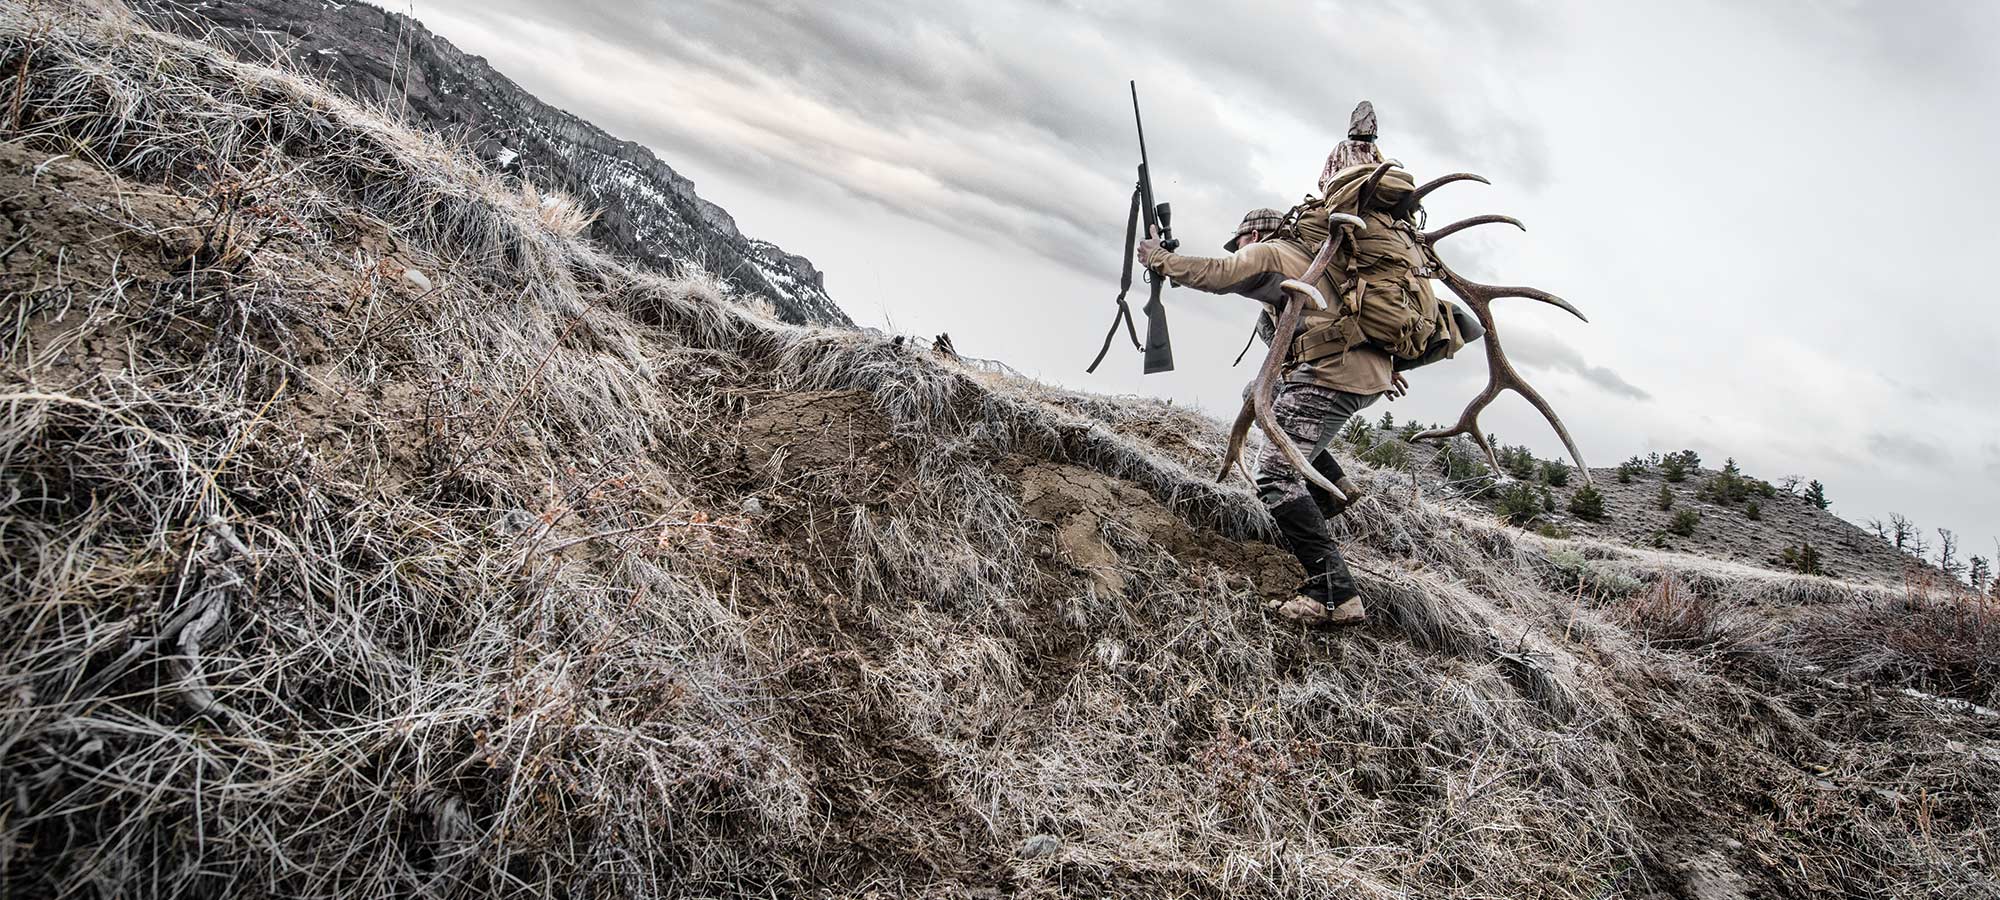 hunter carrying elk antlers up a hillside